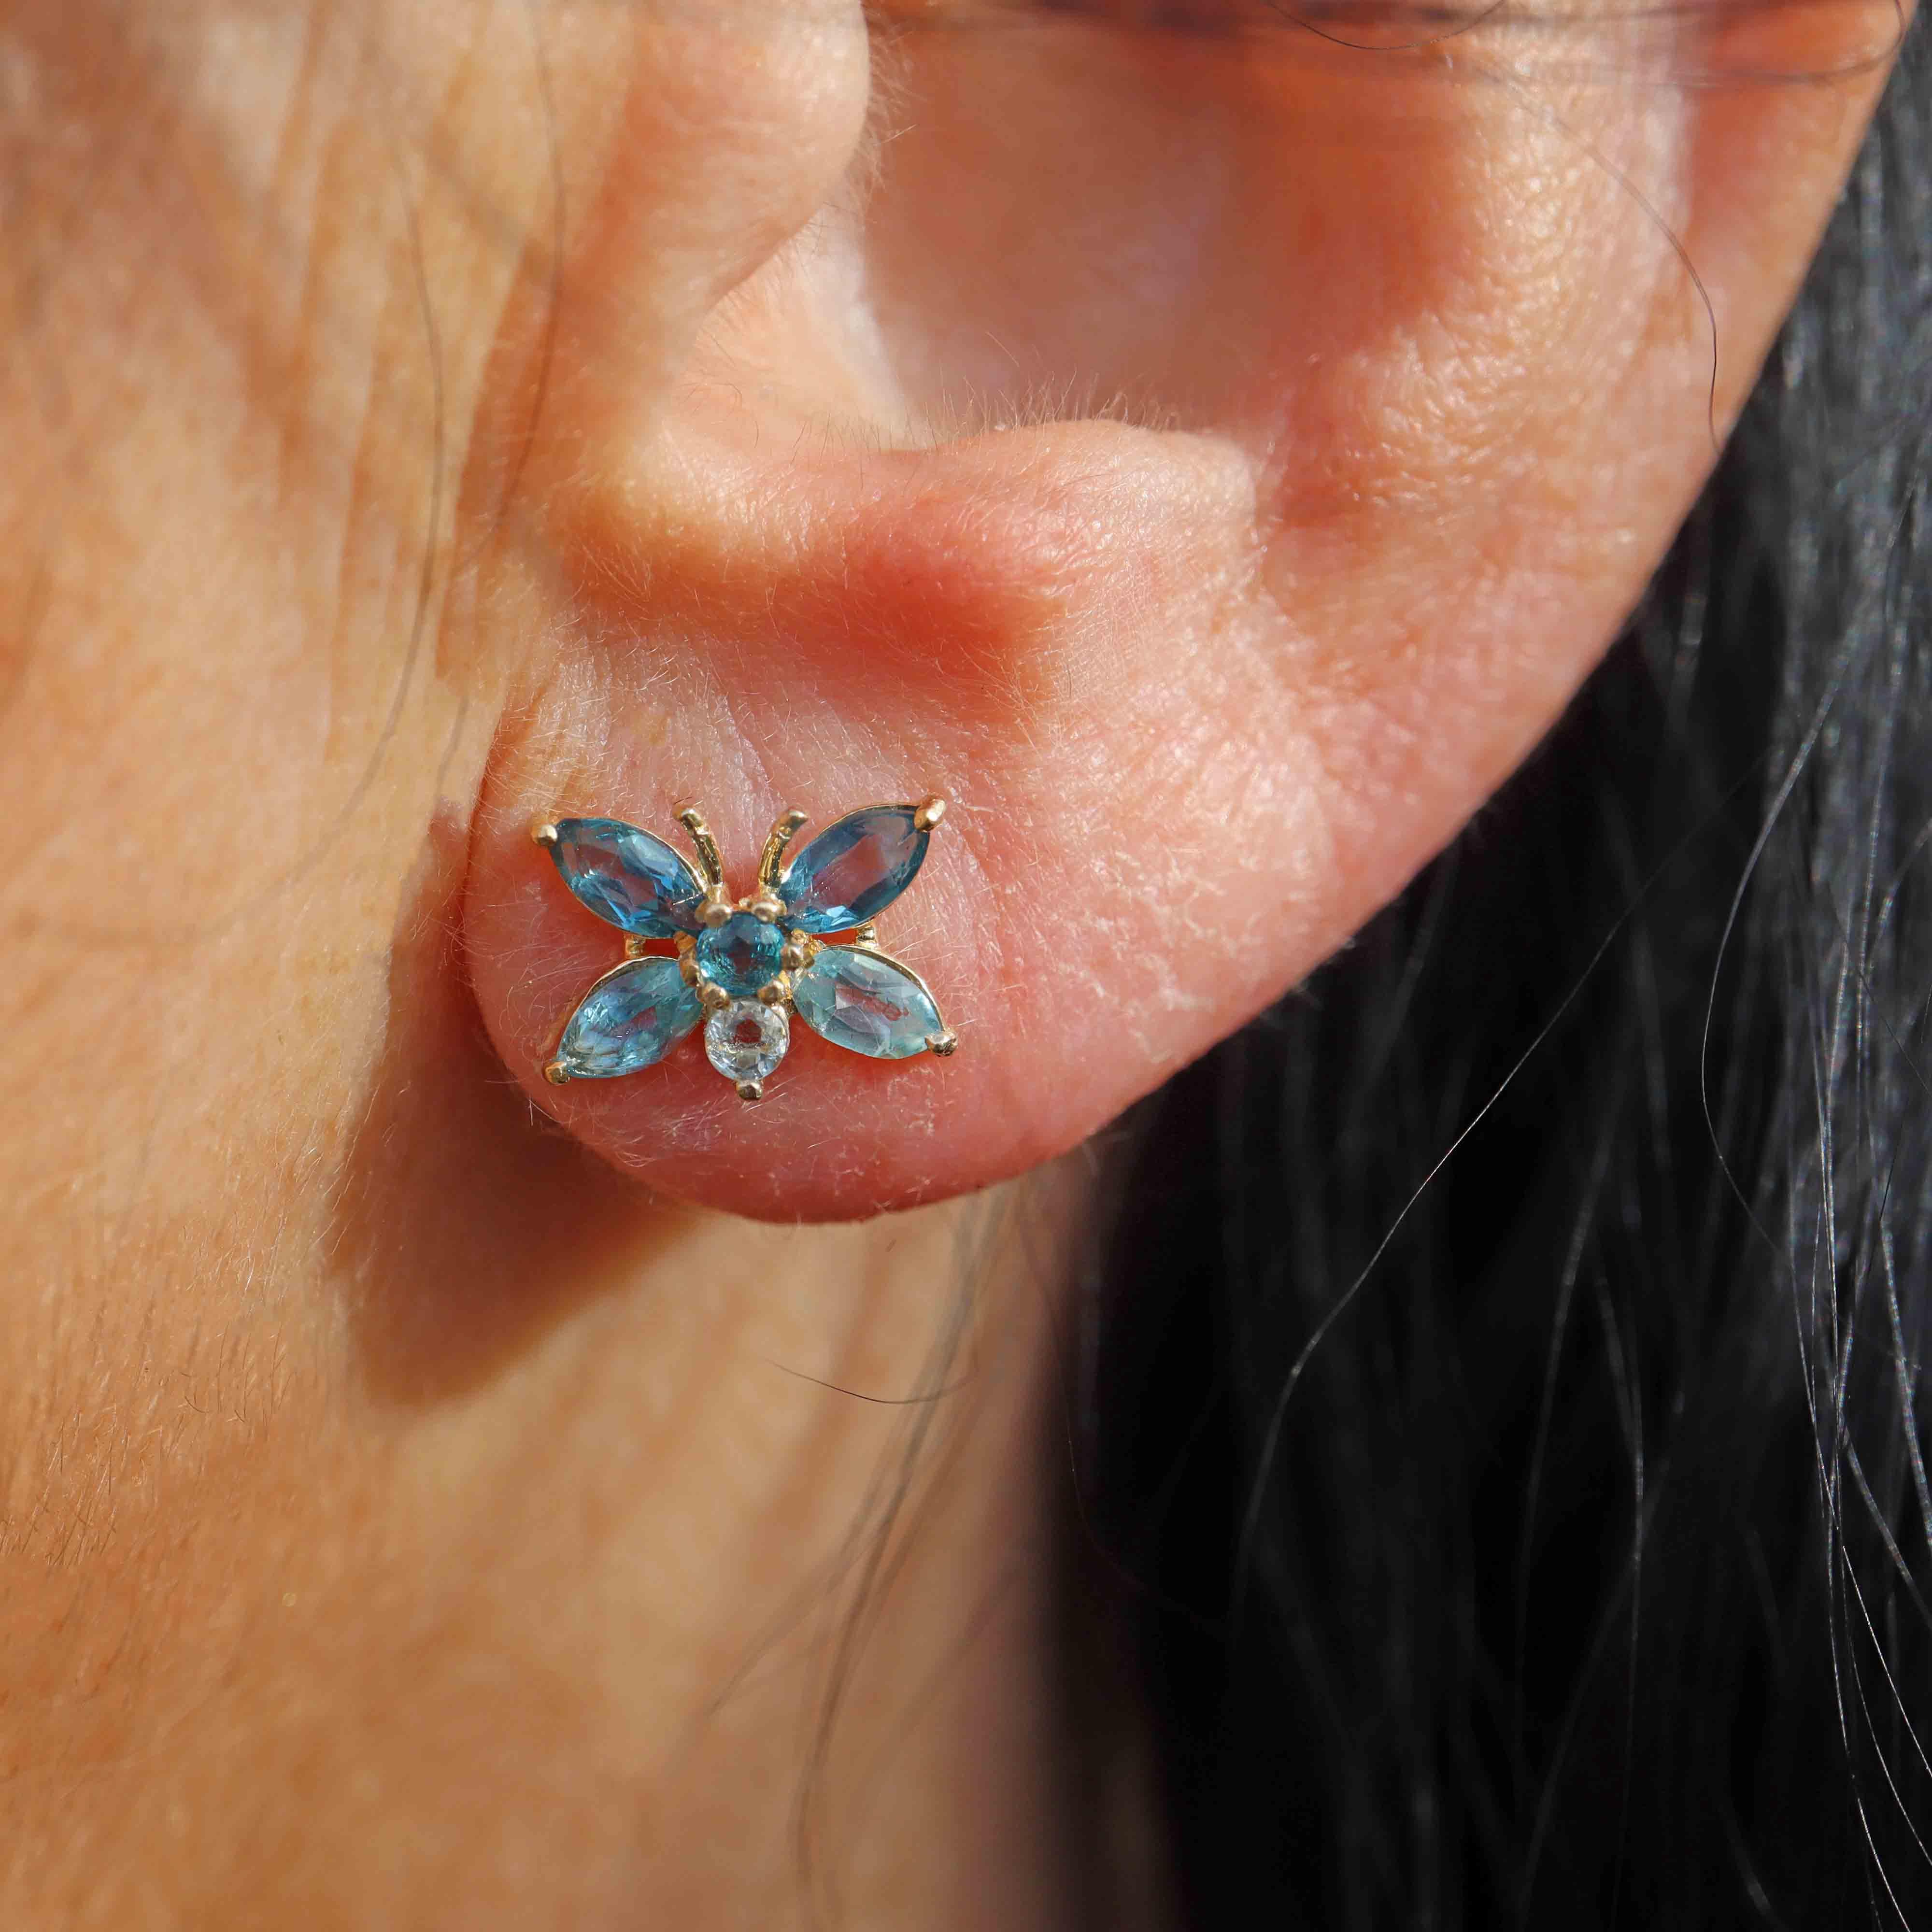 Ellibelle Jewellery Blue Topaz 9ct Gold Butterfly Stud Earrings